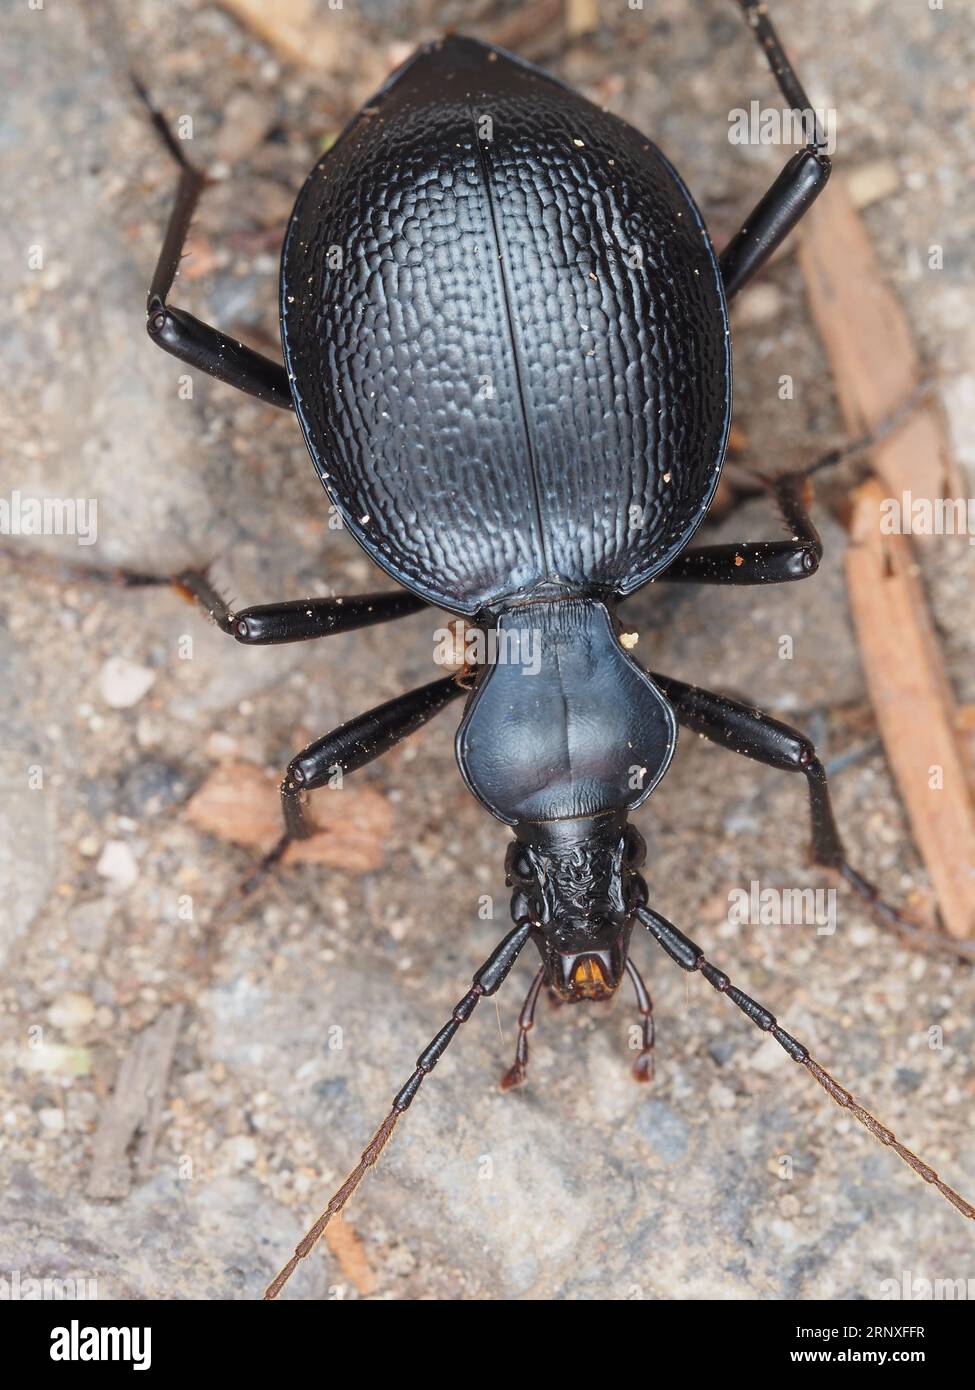 Un coléoptère identifié comme Scaphinotus sp. avec un minuscule acarien - beetle macro Banque D'Images